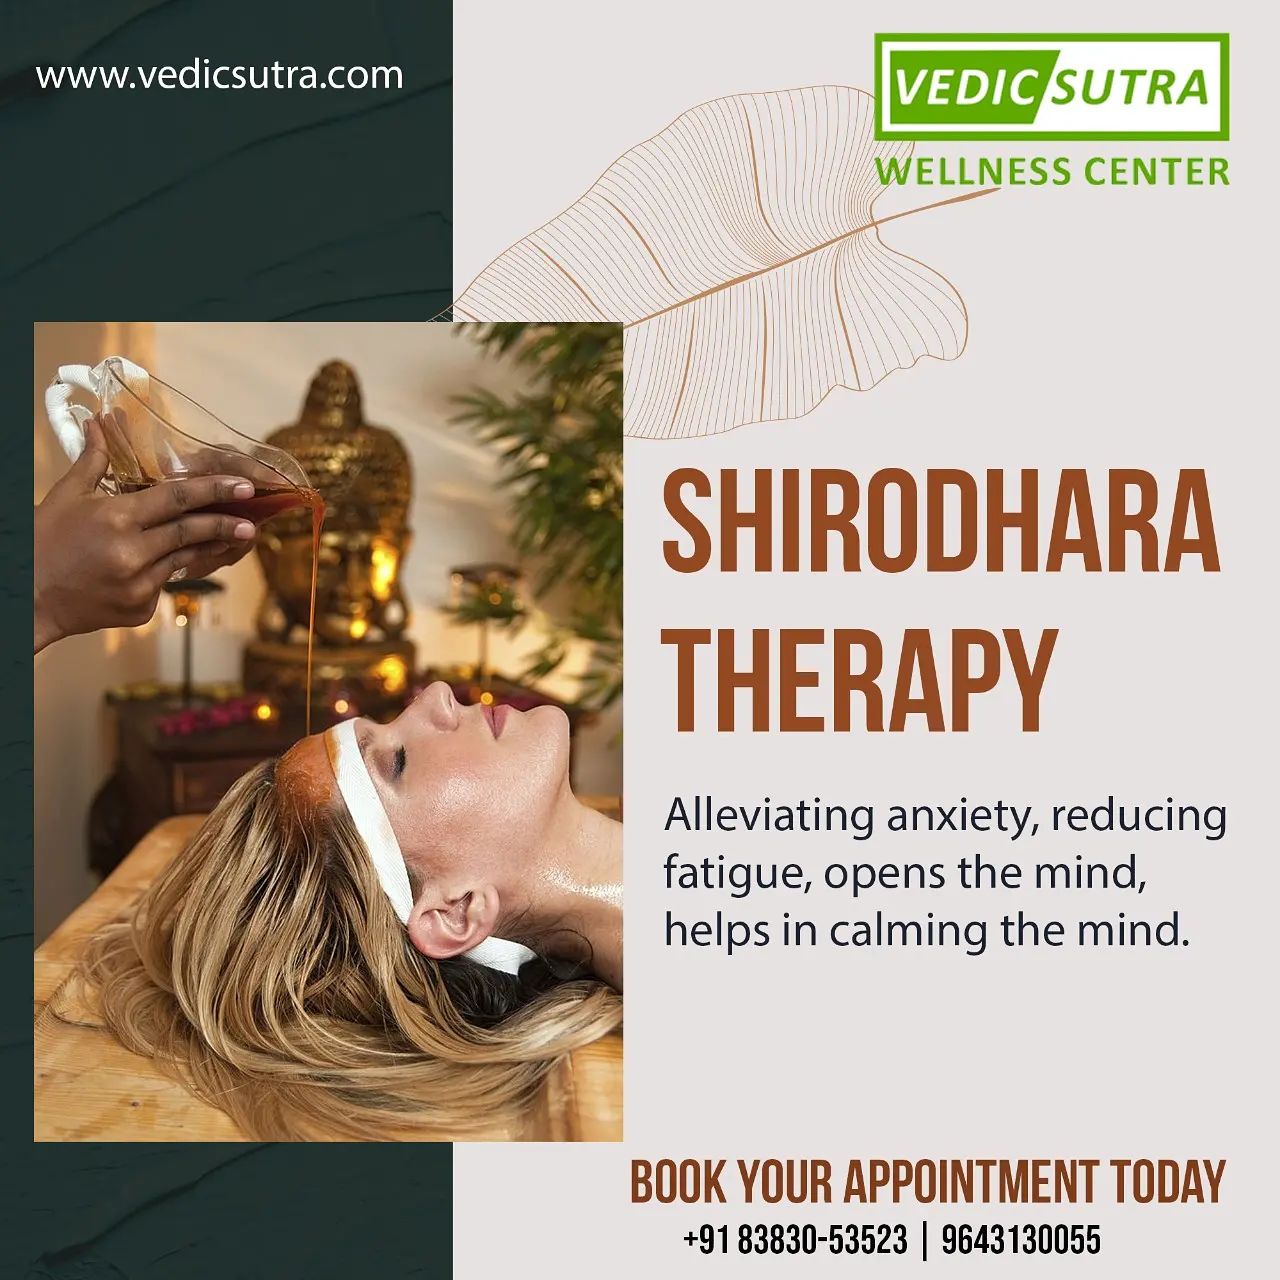 Benefits of Shirodhara